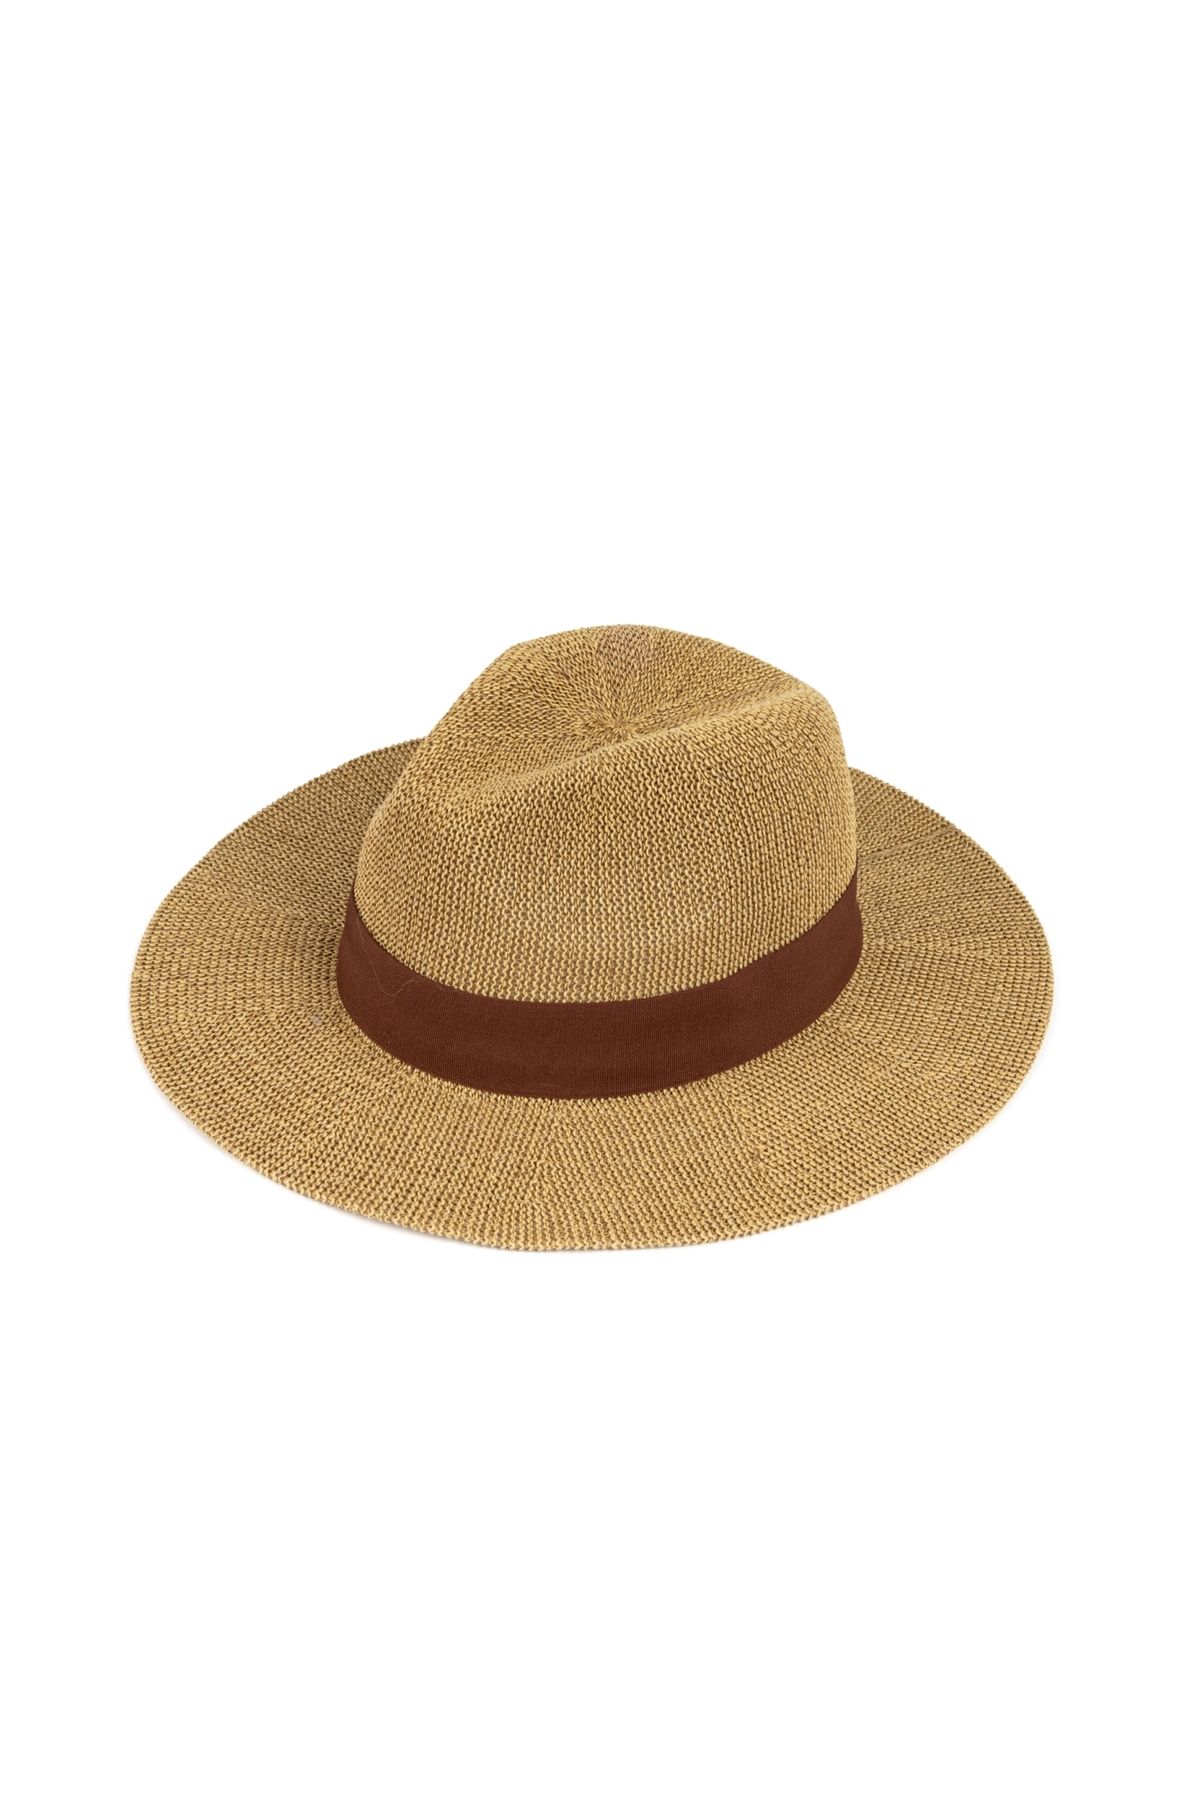 İpekyol Kumaş şeritli hasır şapka